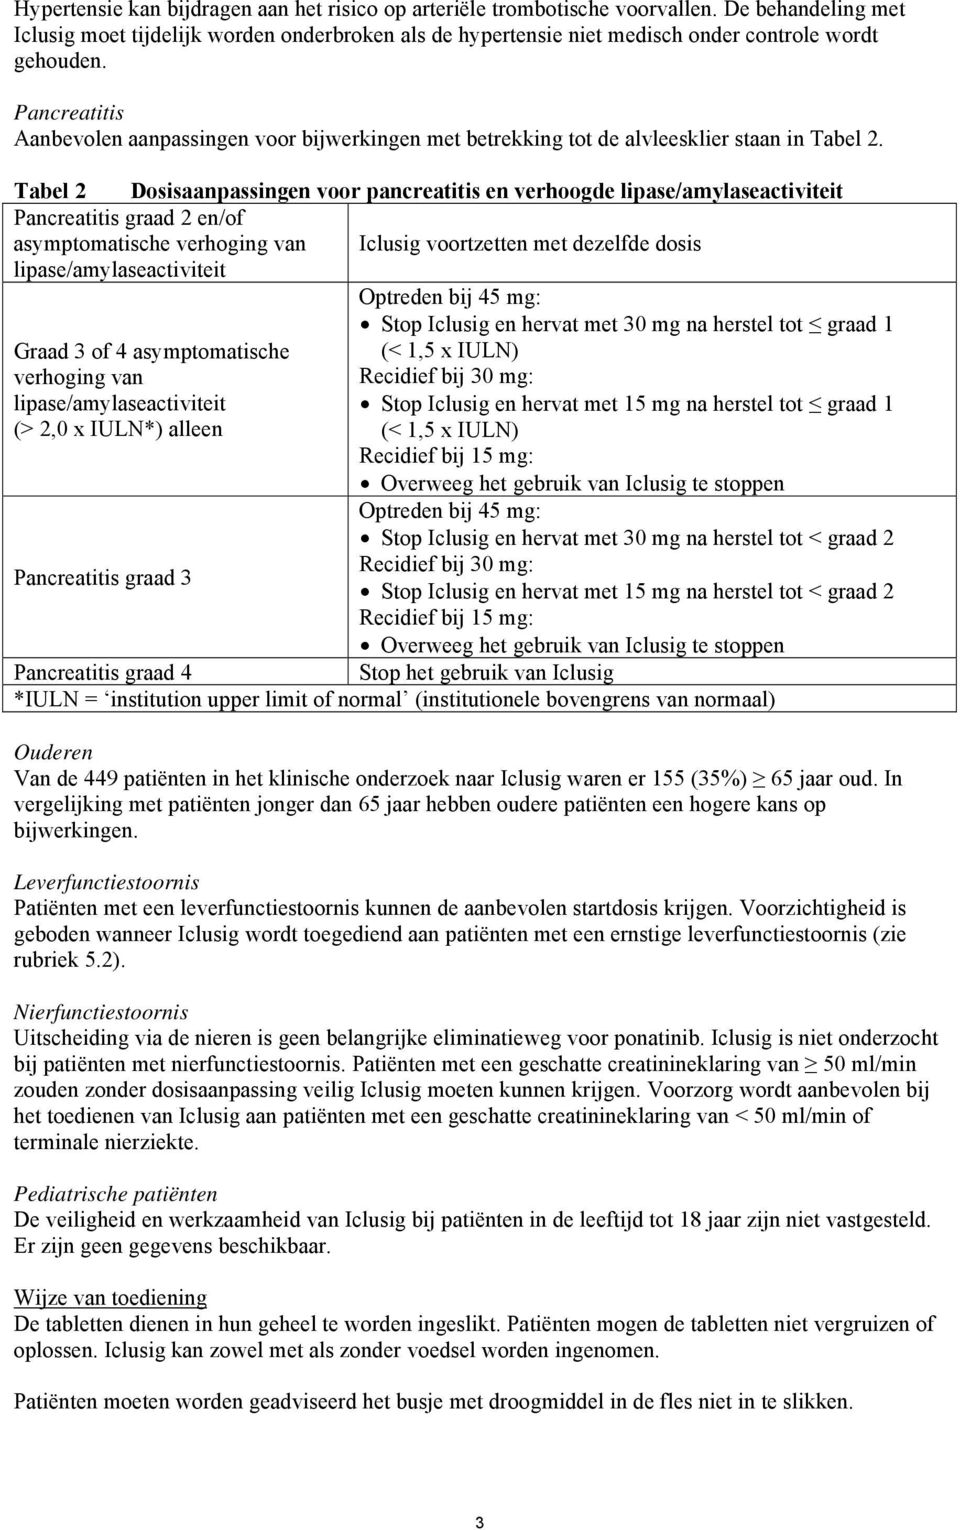 Pancreatitis Aanbevolen aanpassingen voor bijwerkingen met betrekking tot de alvleesklier staan in Tabel 2.